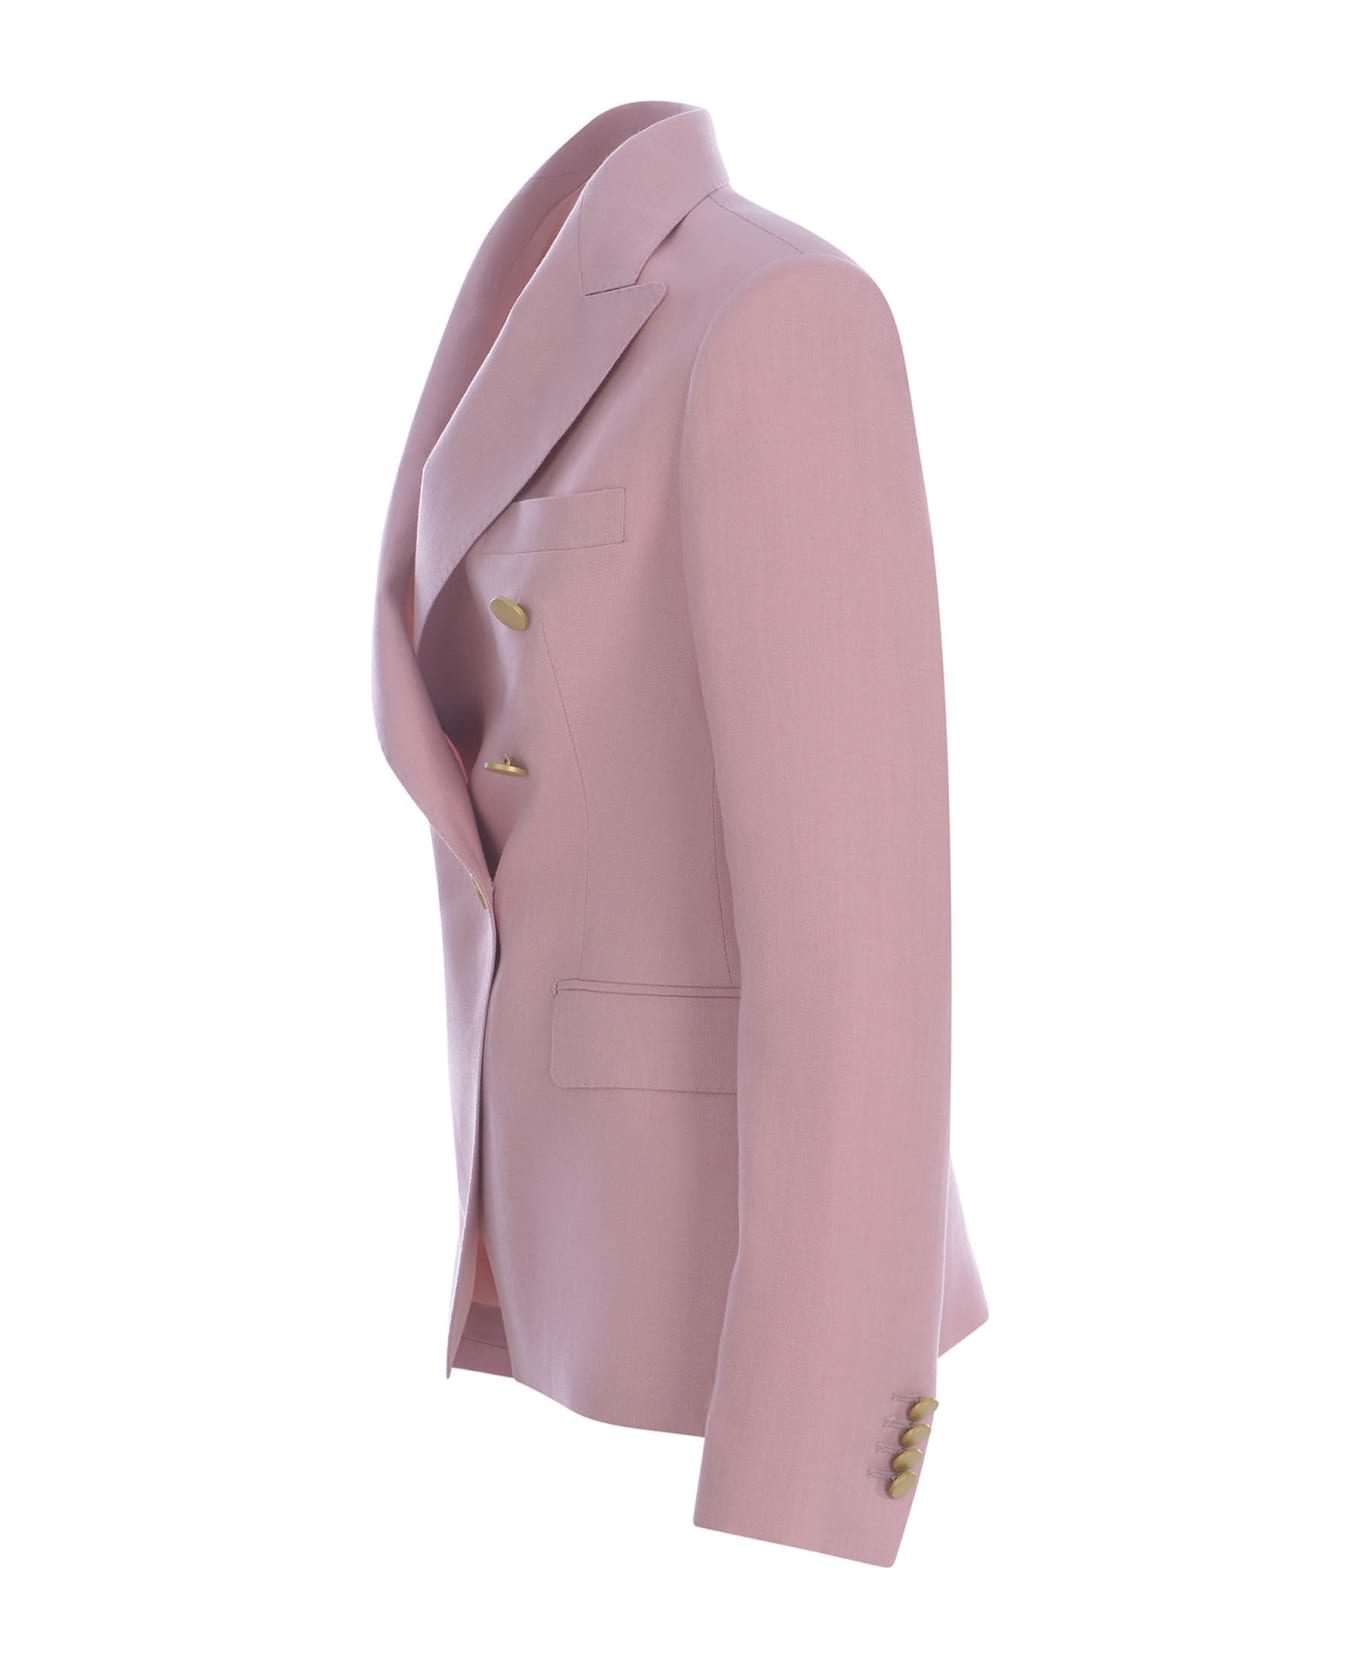 Tagliatore Double-breasted Jacket Tagliatore "j-alycia" Made Of Linen - Rosa